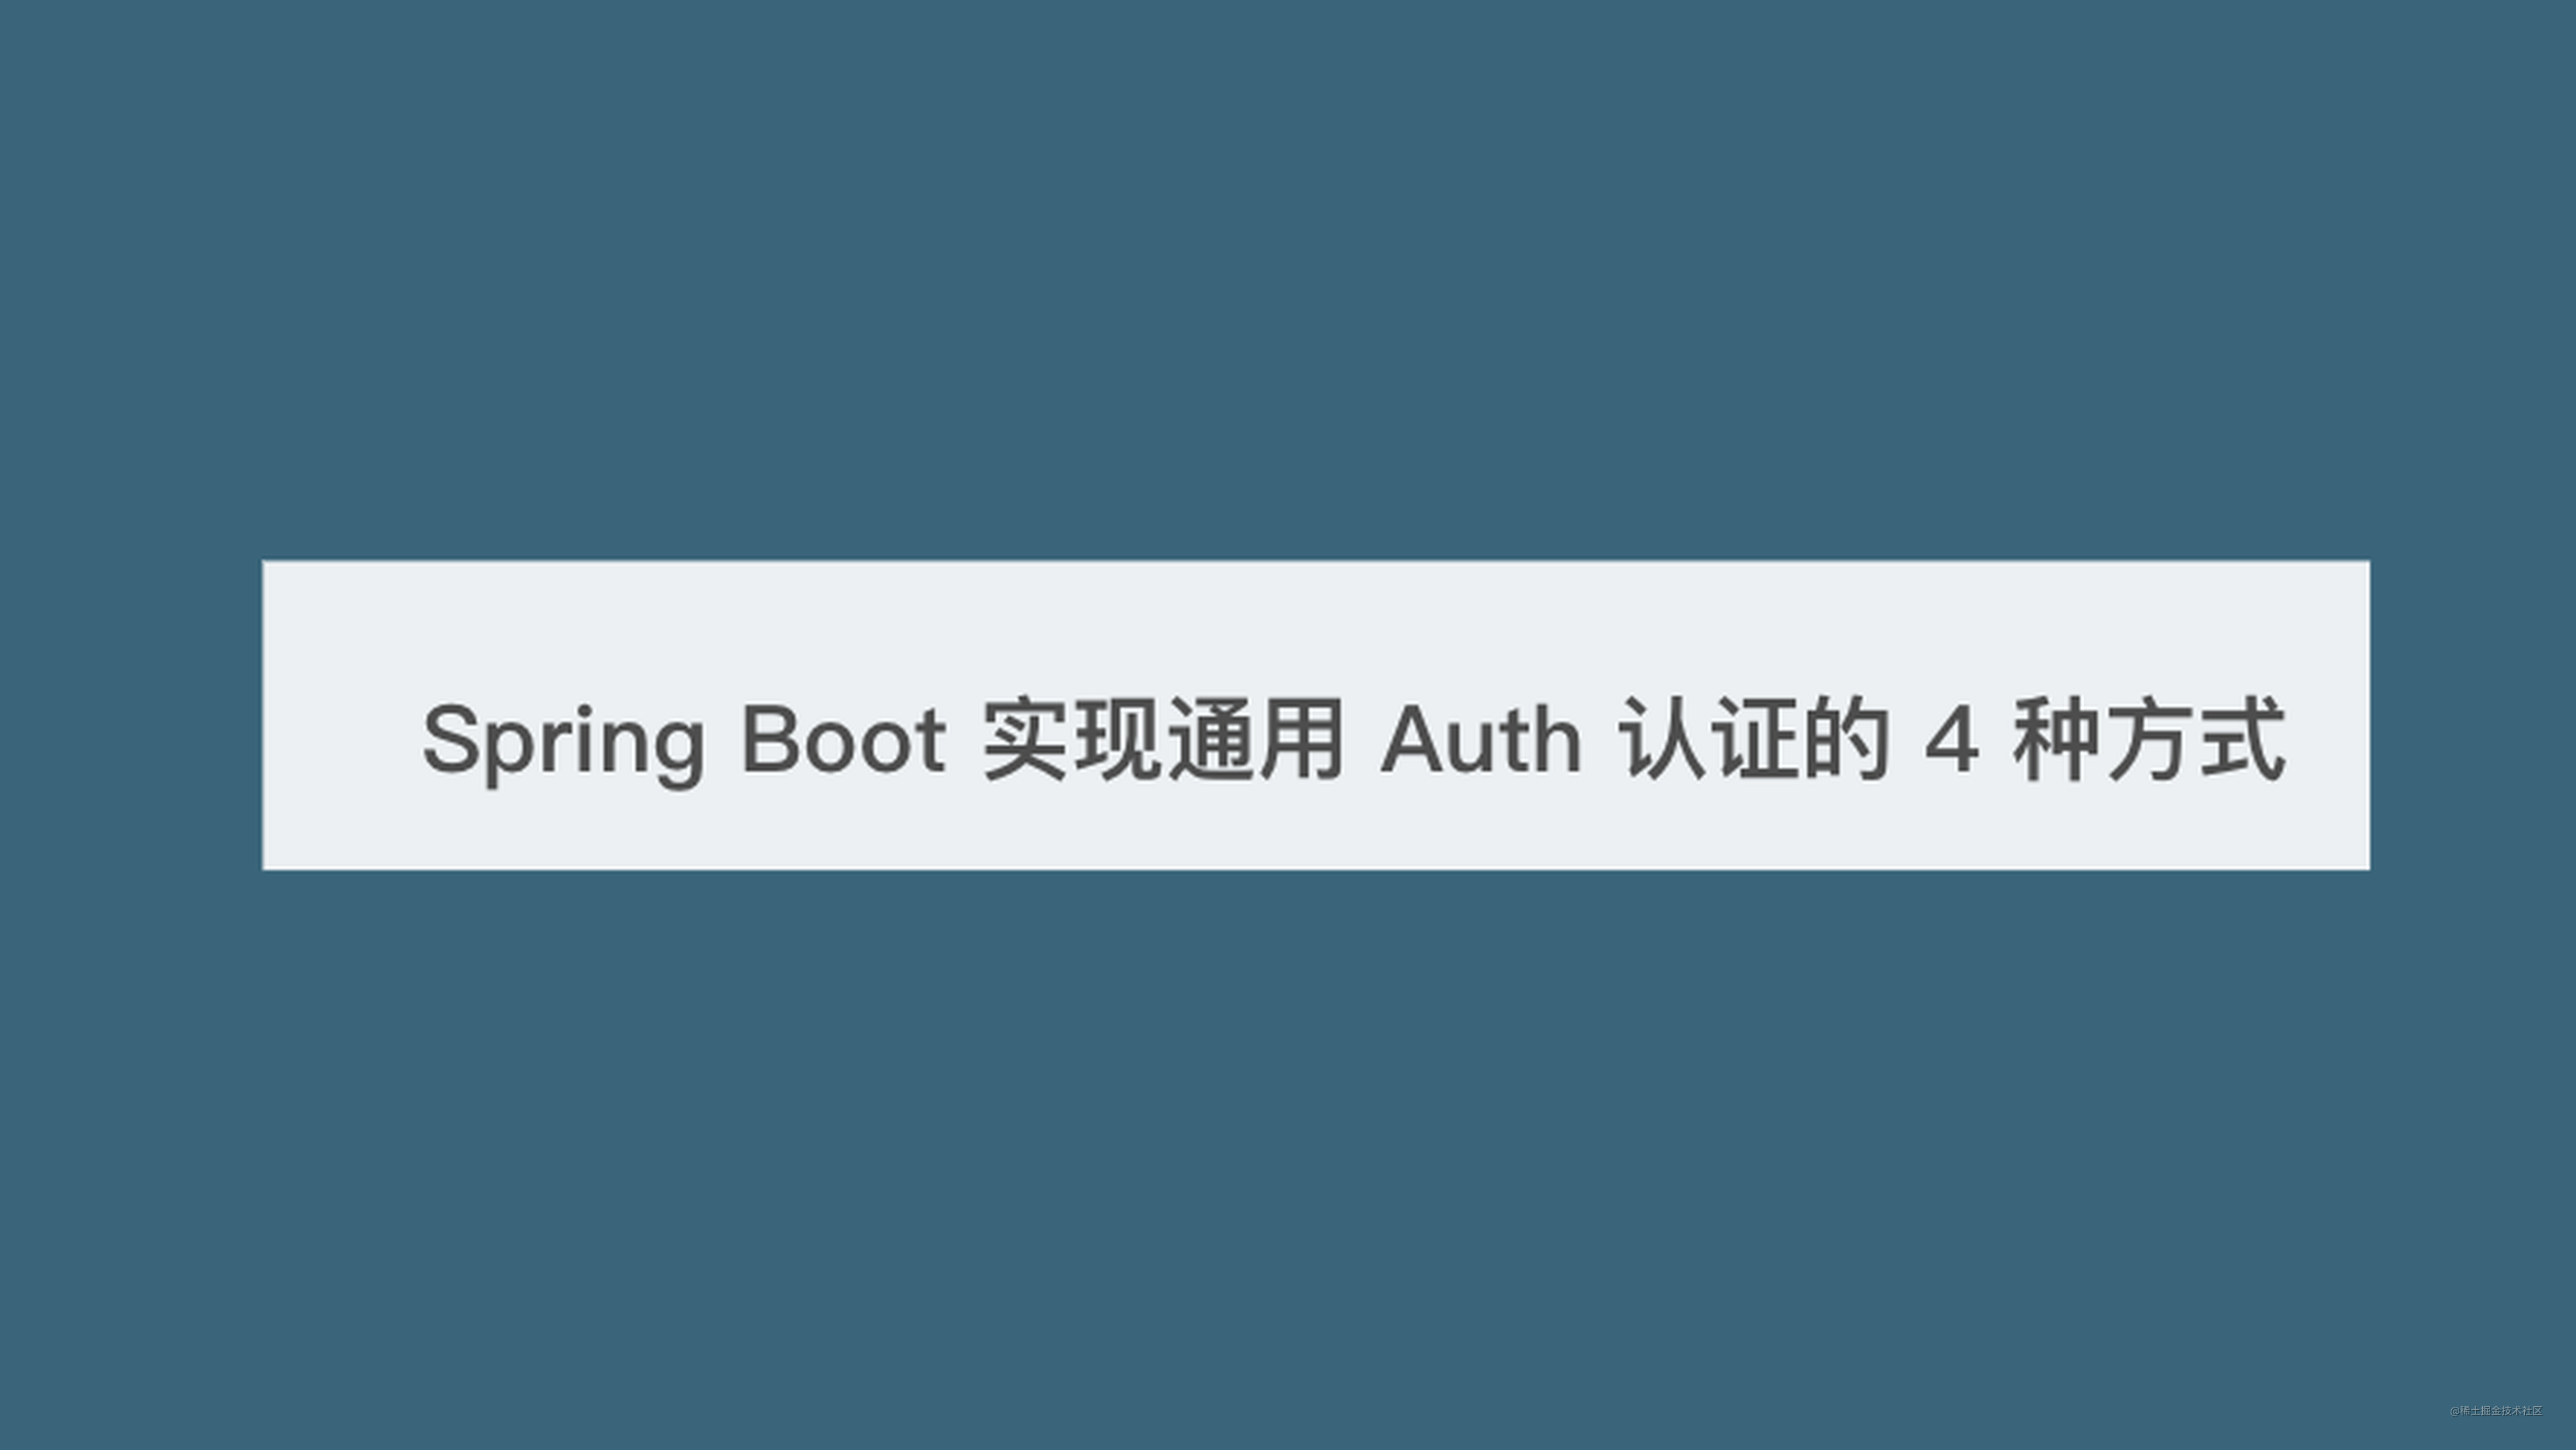 码农架构 | Spring Boot 实现通用 Auth 认证的 4 种方式